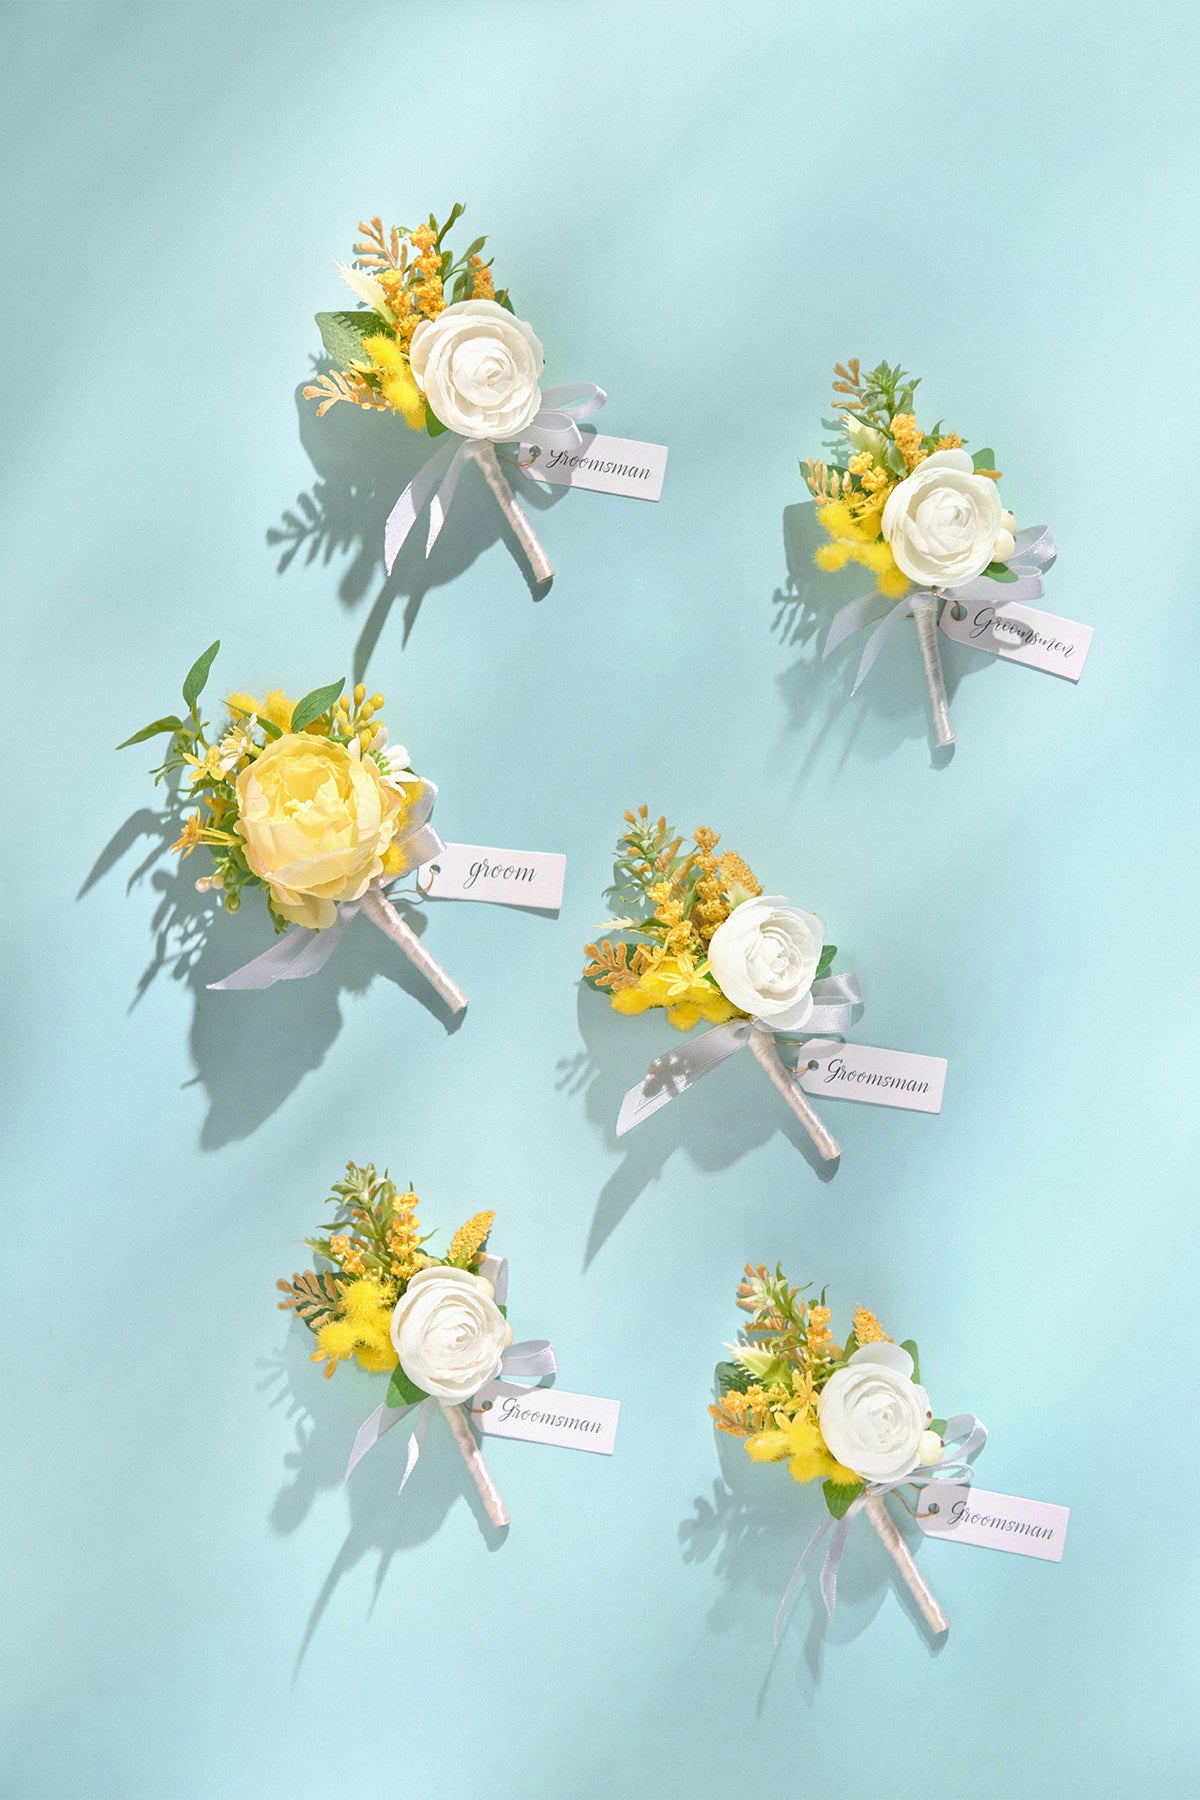 Pre-Arranged Wedding Flower Packages in Lemonade Yellow